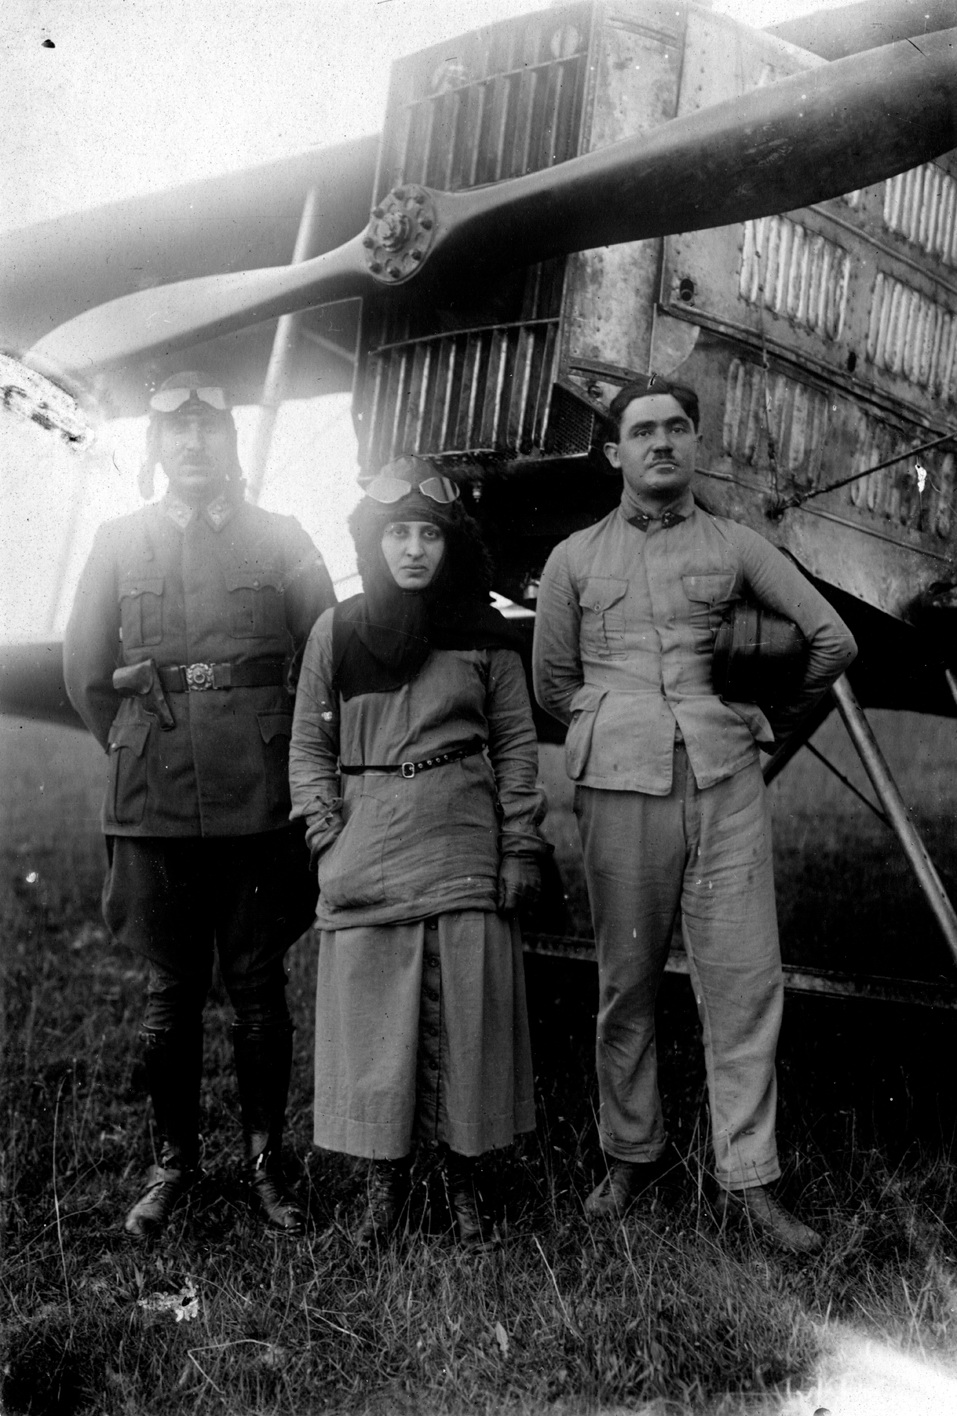 Yüzbaşı Fazıl Bey, Sakarya Savaşı sonrasında kendisini ziyarete gelen Halide Edip (Adıvar) ile birlikte Breguet 14 uçağı önünde